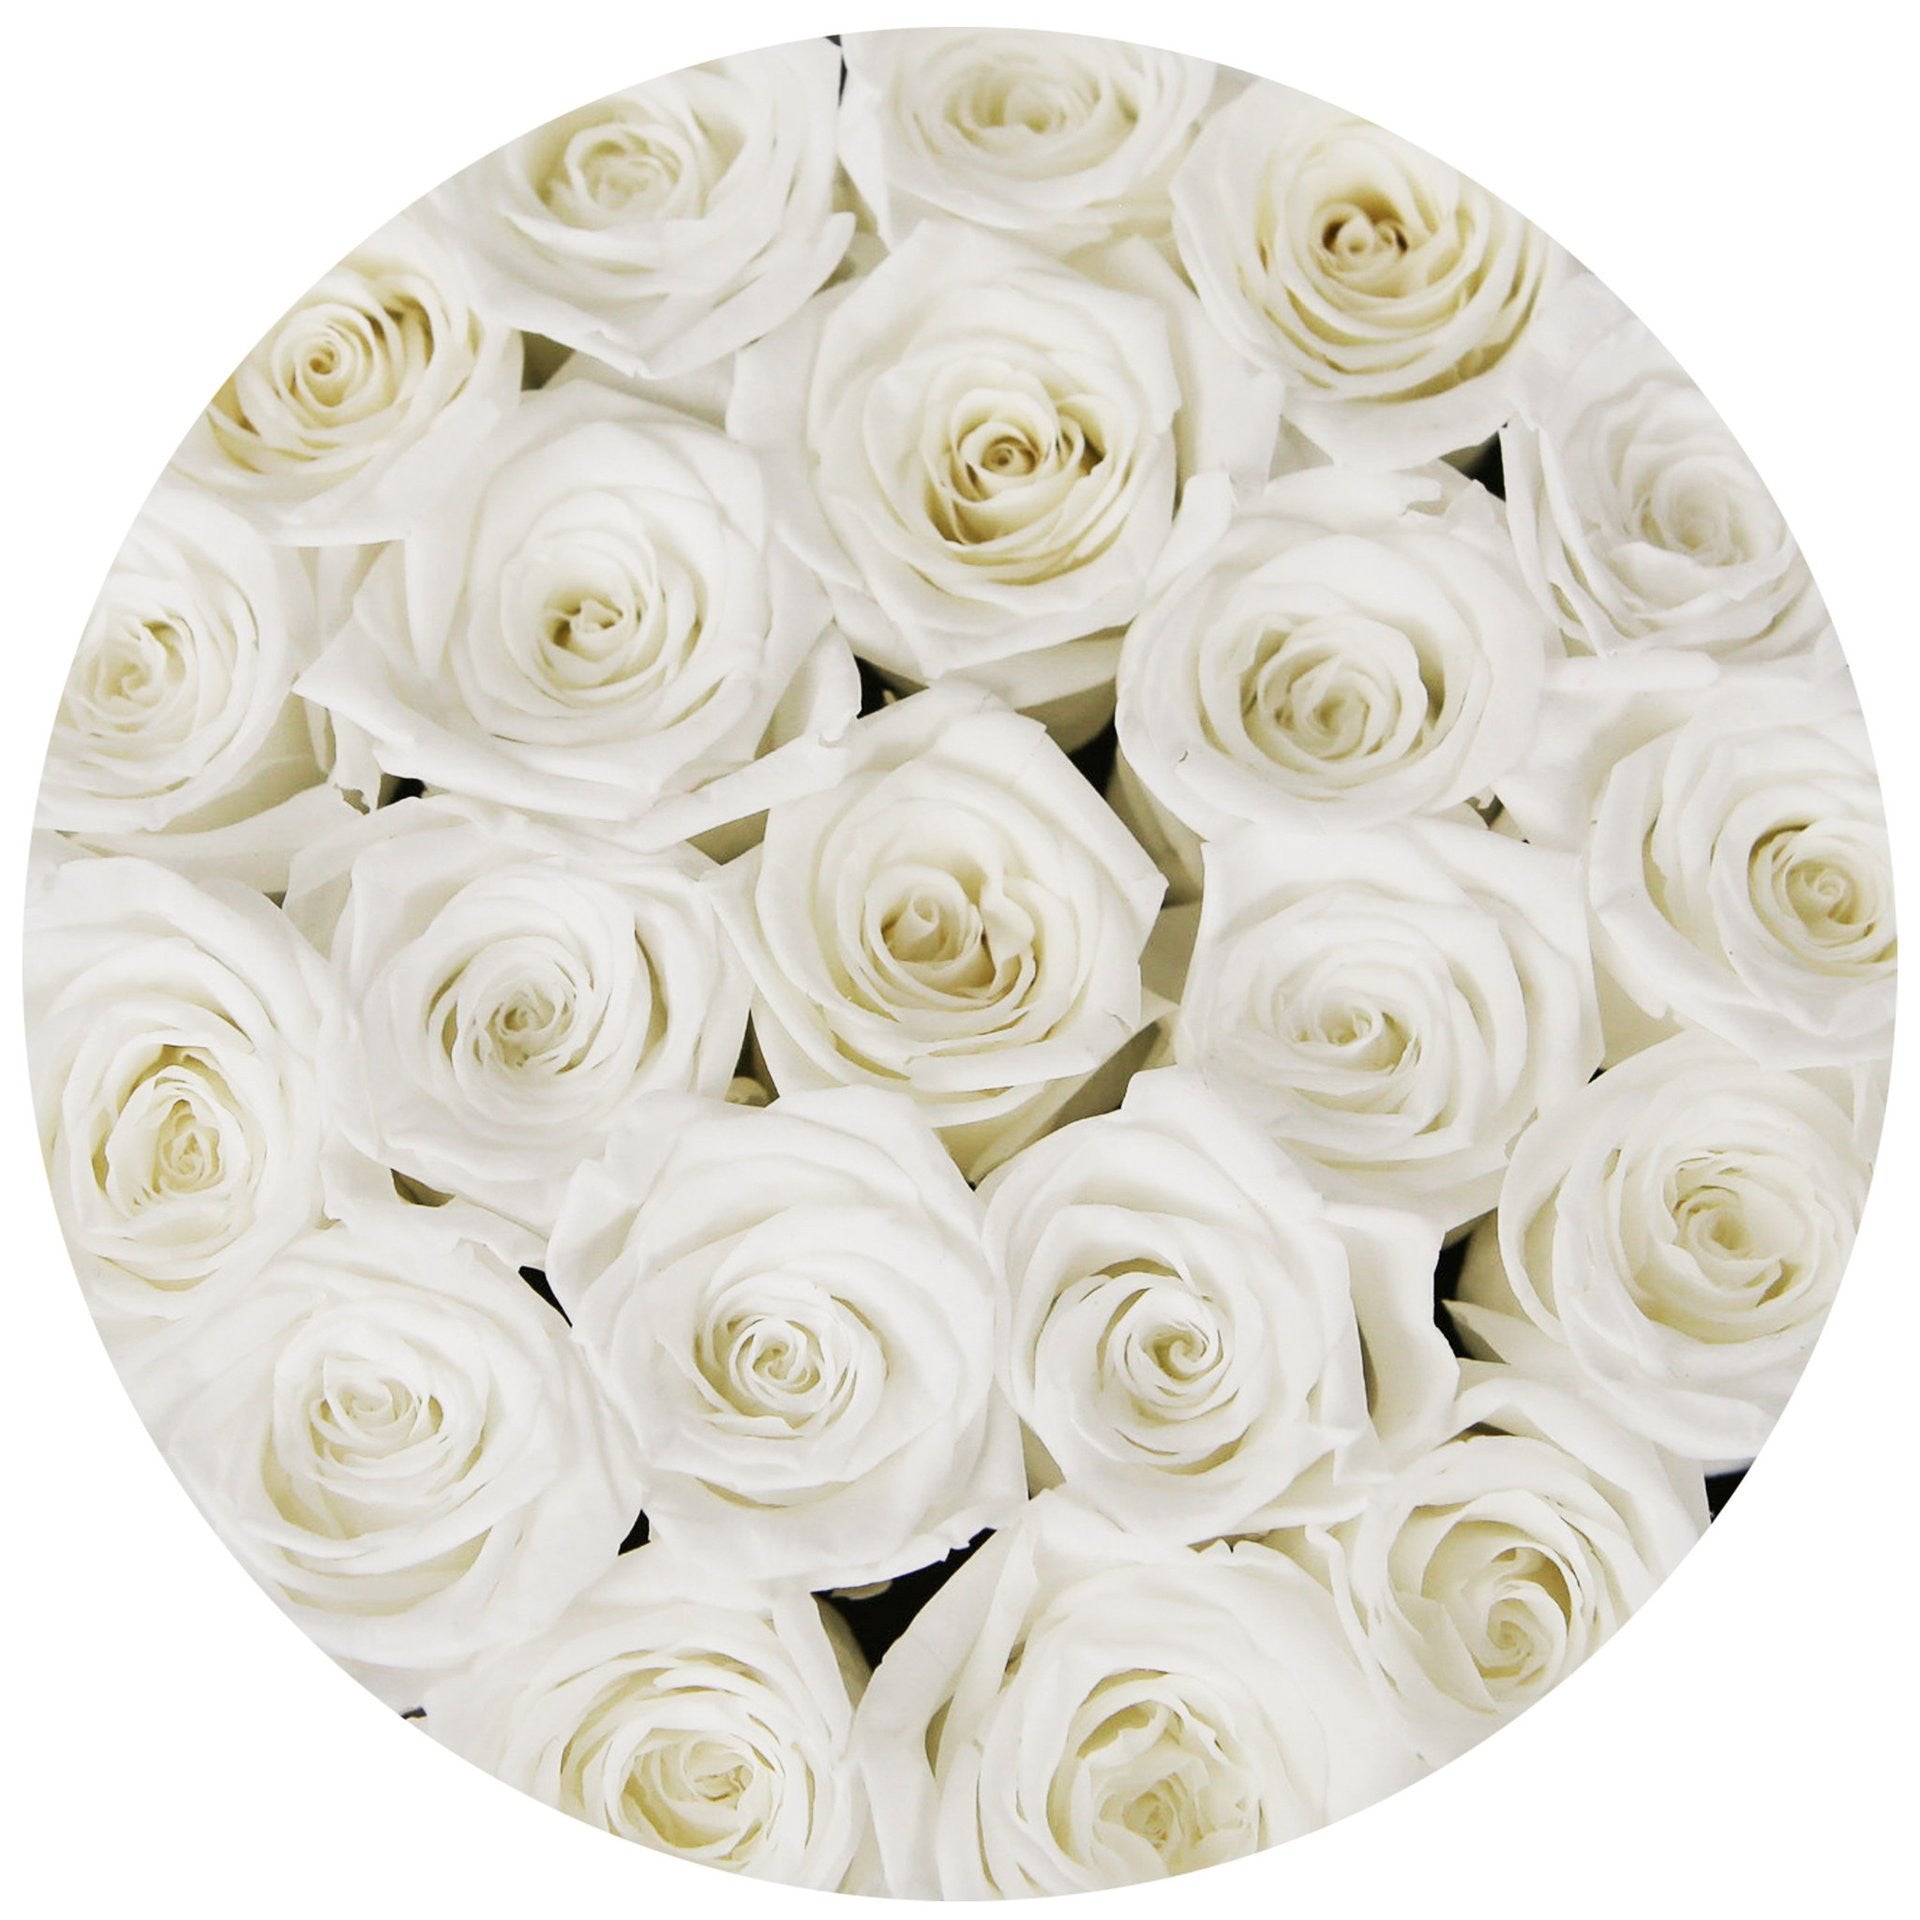 Trandafiri criogenati albi in cutie mica neagra